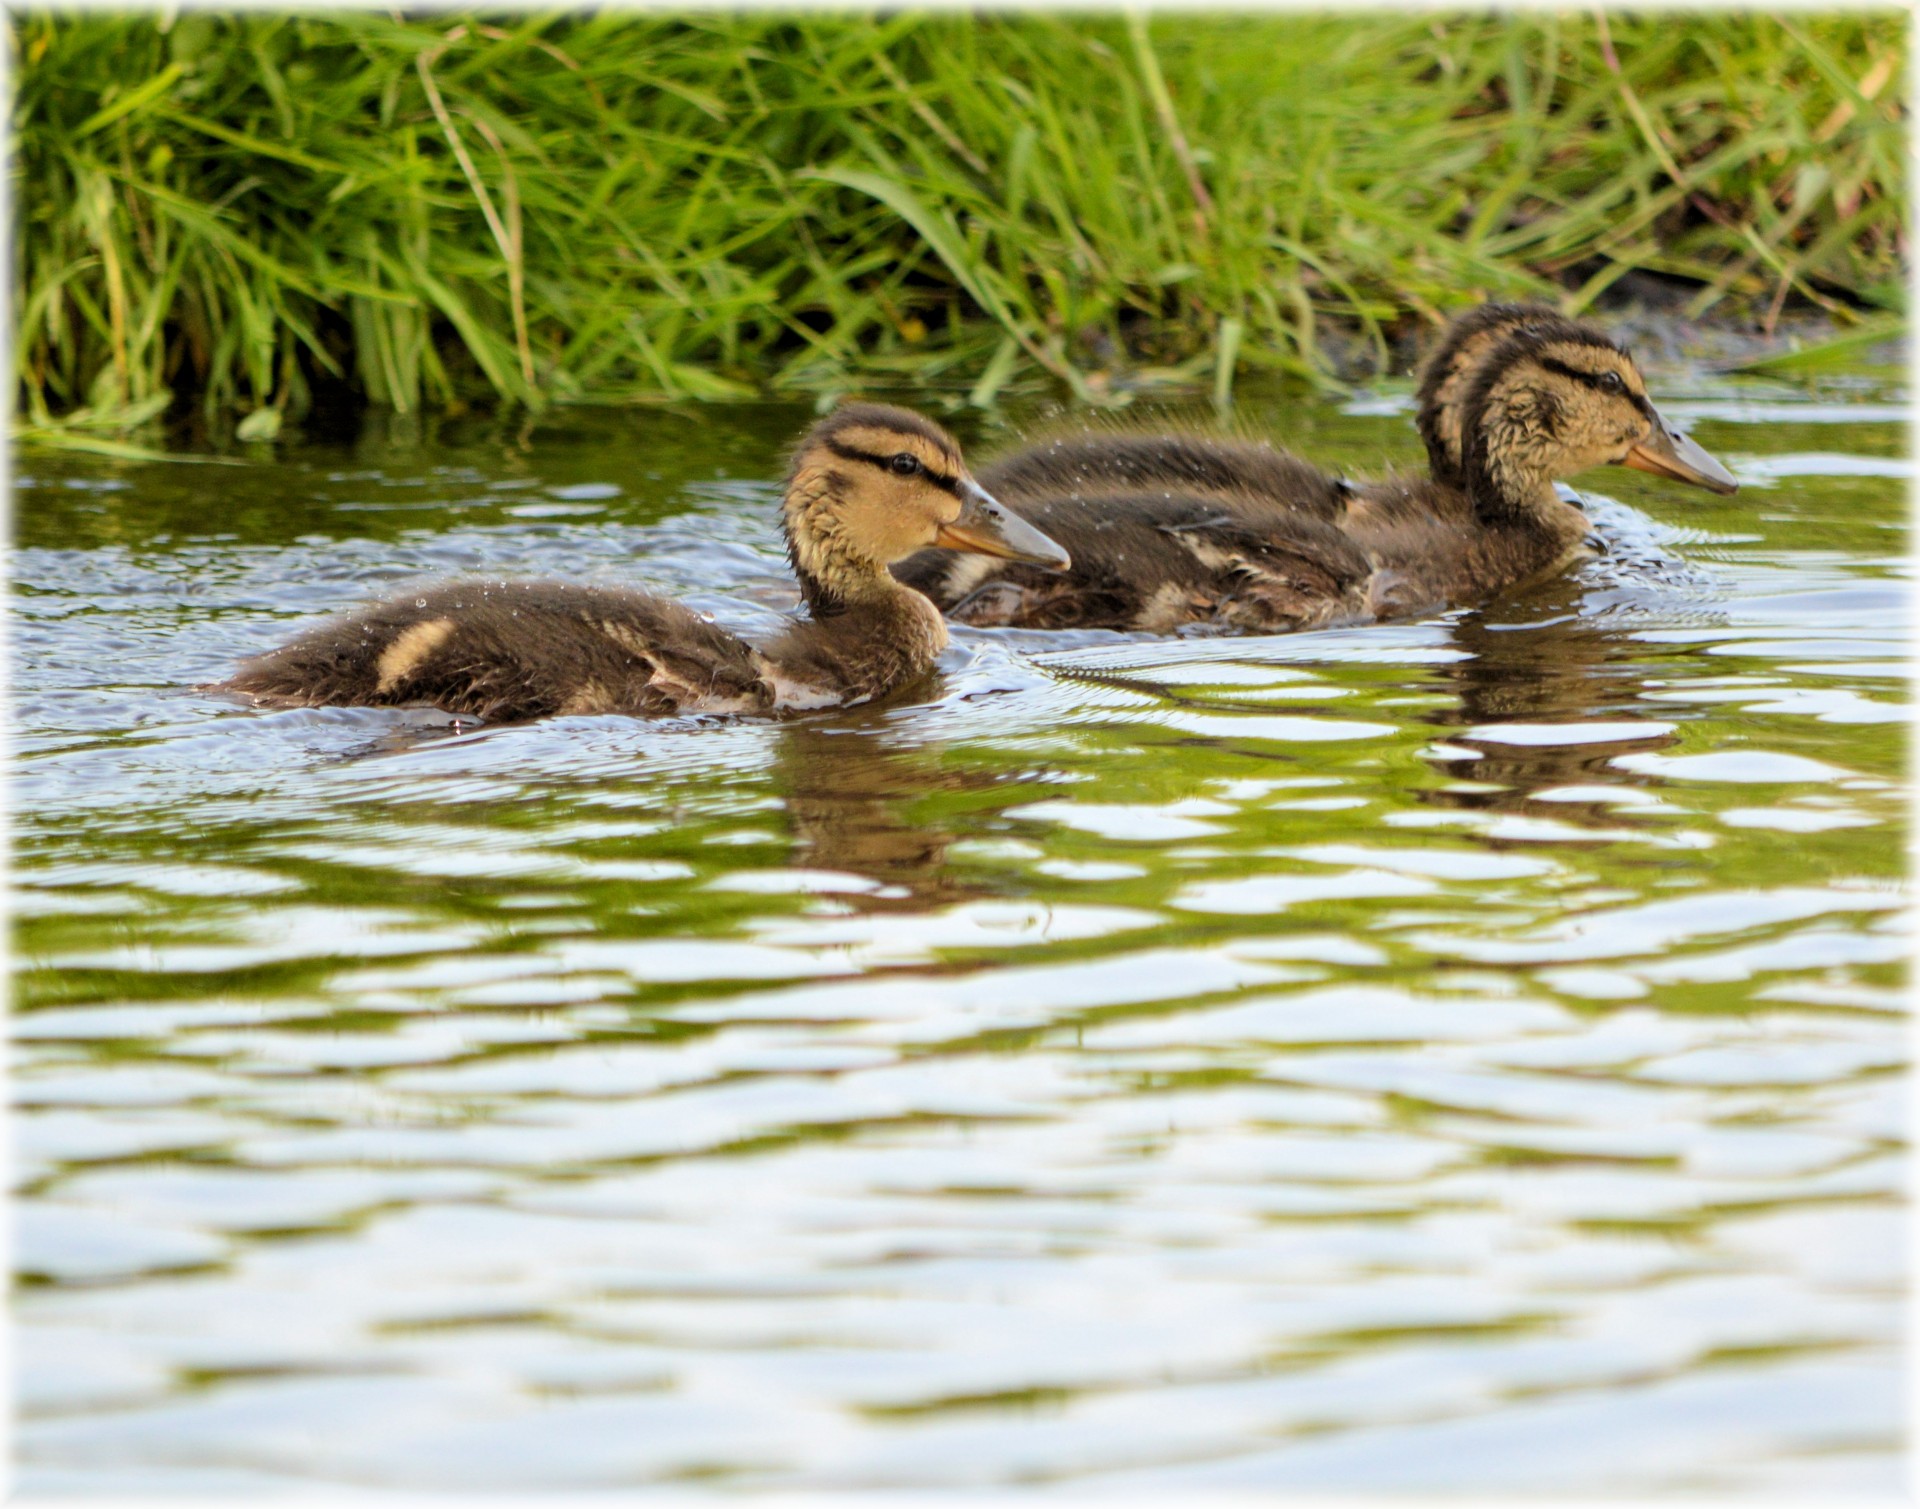 2 young ducks swimming in the water, tra la la la